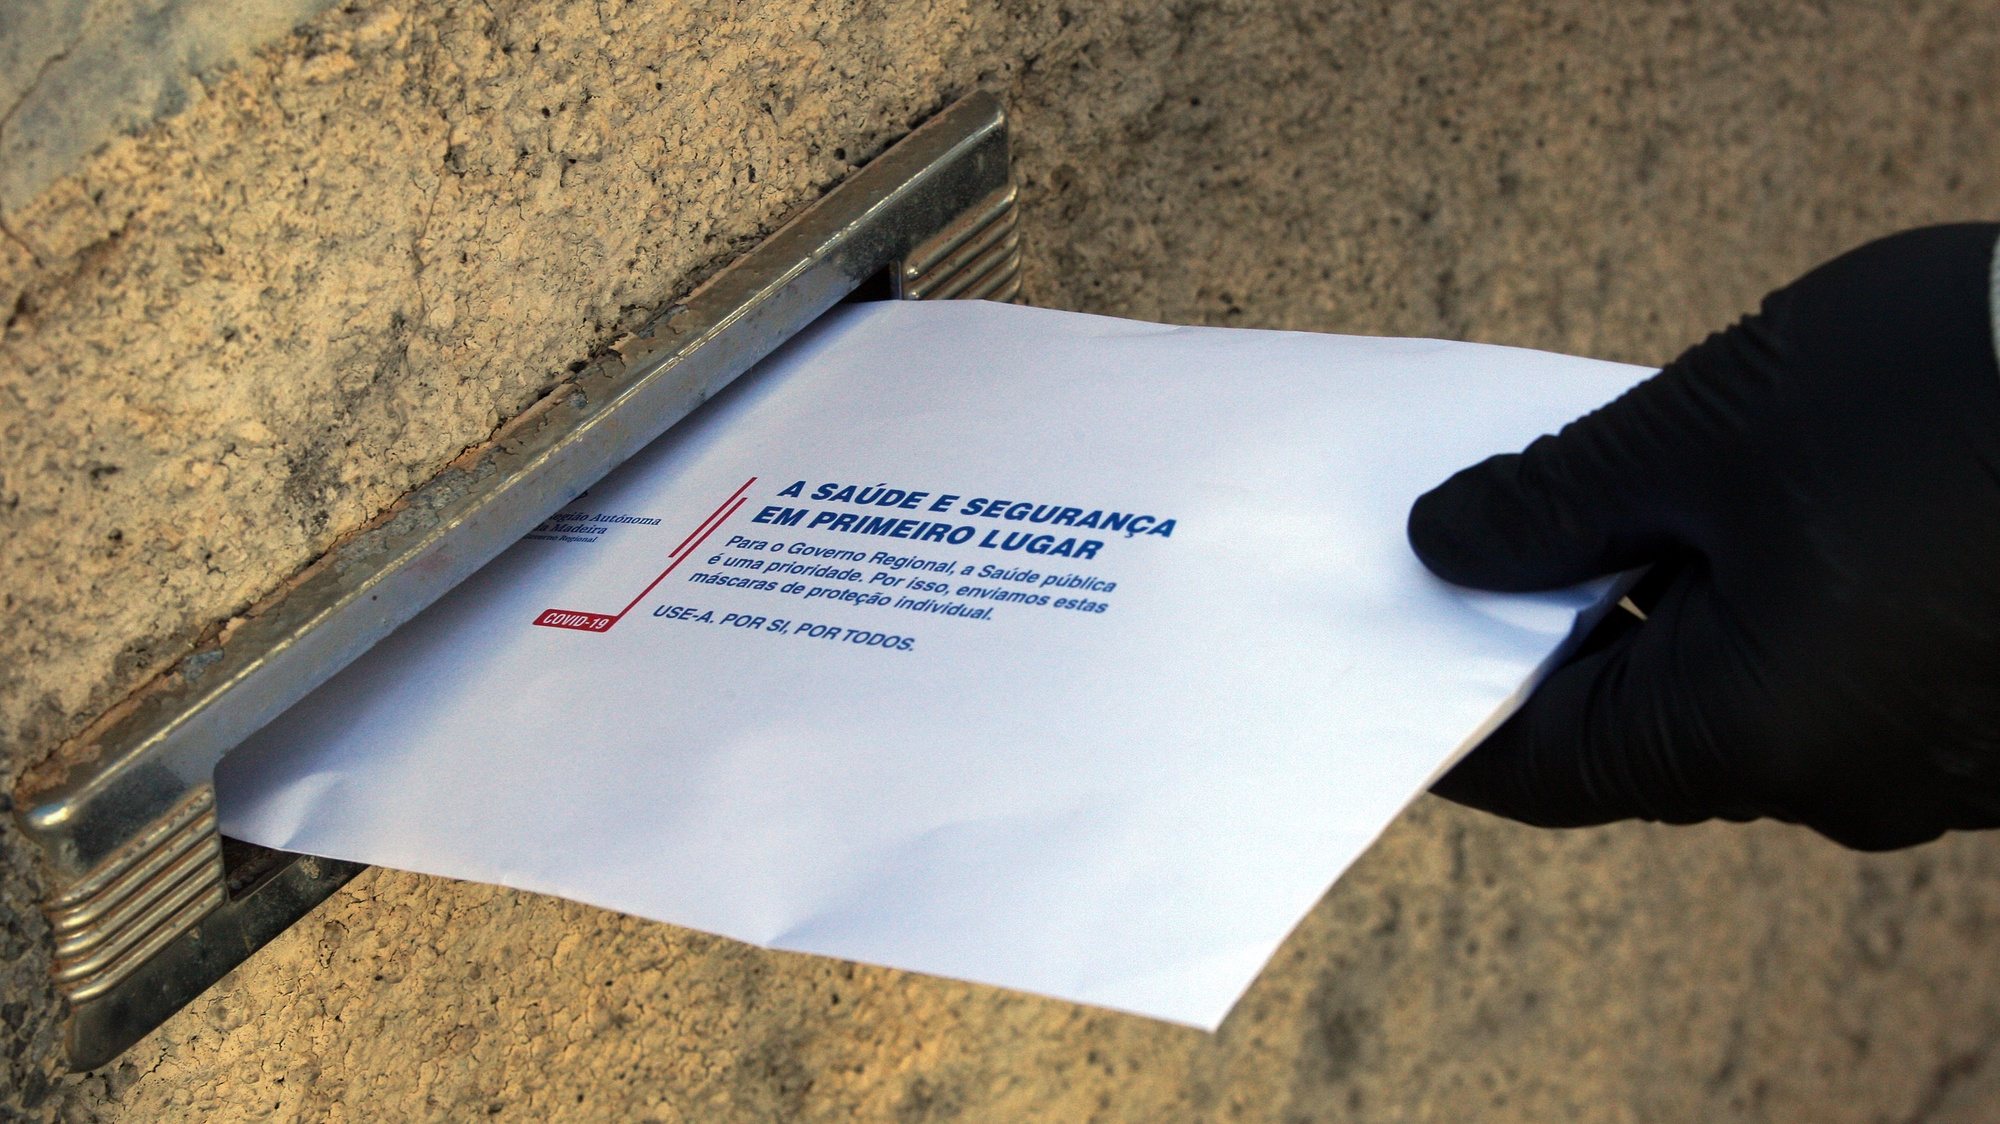 Décio Farinha, carteiro dos CTT Madeira, entrega envelopes enviados pelo Governo Regional contendo máscaras de proteção contra a covid-19, no Funchal, ilha da Madeira, 17 de abril de 2020. HOMEM DE GOUVEIA/LUSA